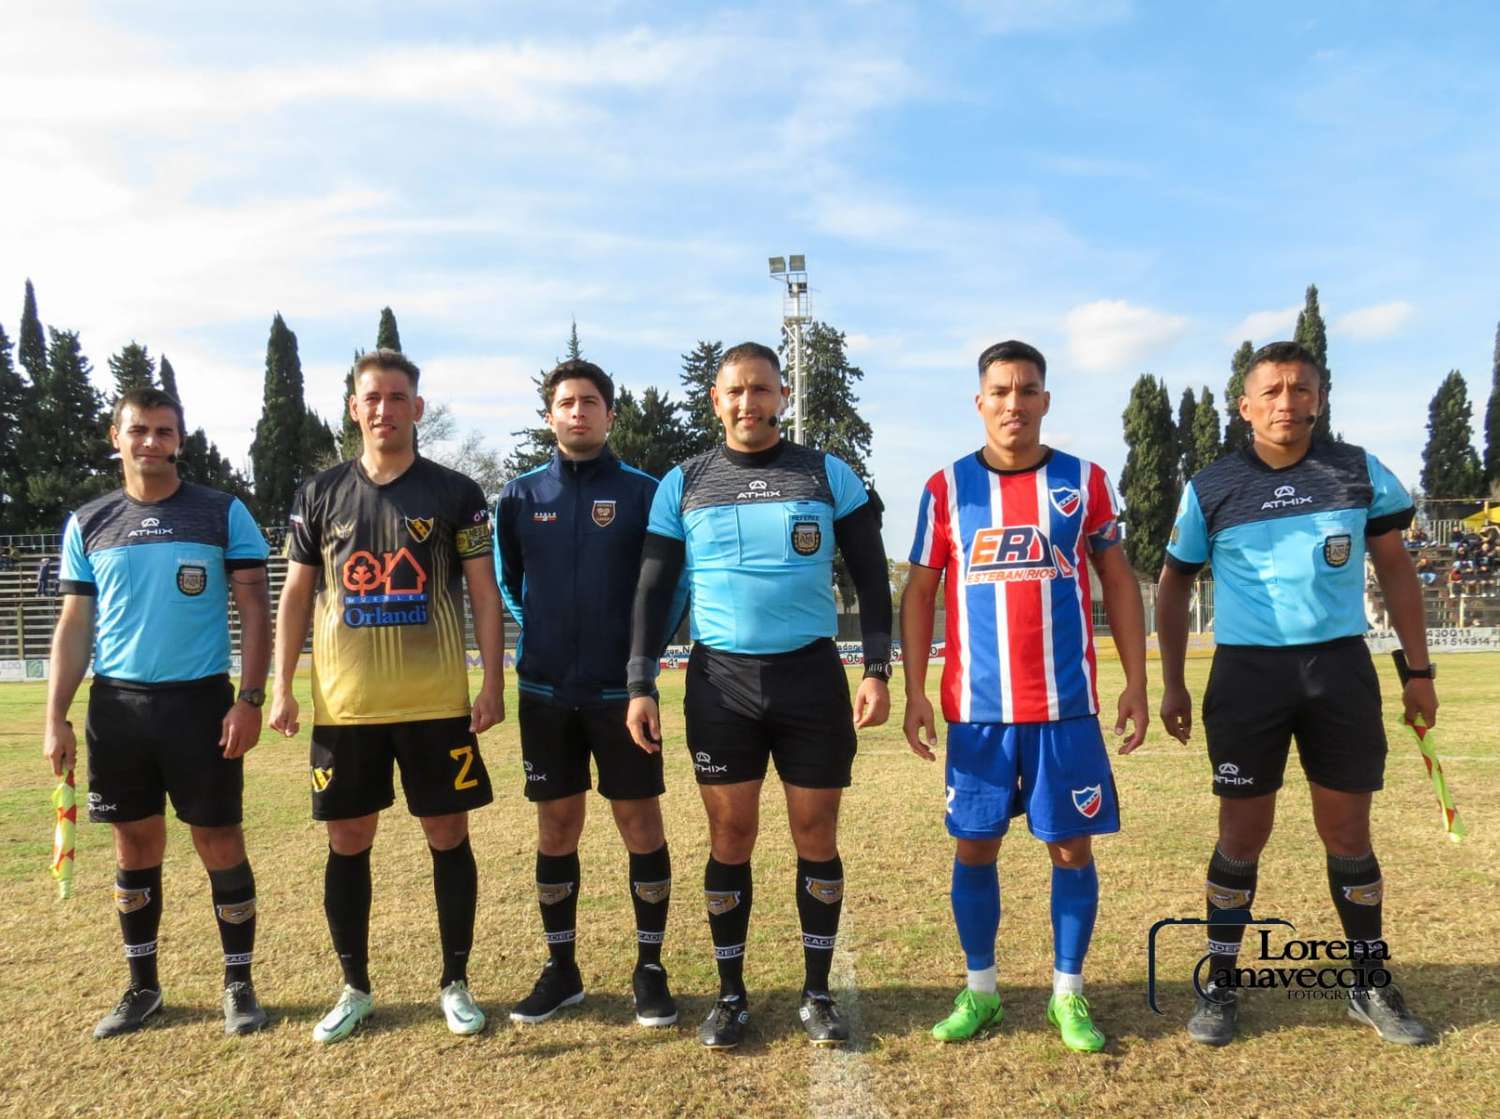 Newbery y Peñarol será uno de los partidos que abran los cuartos de final. Foto: Lorena Canaveccio